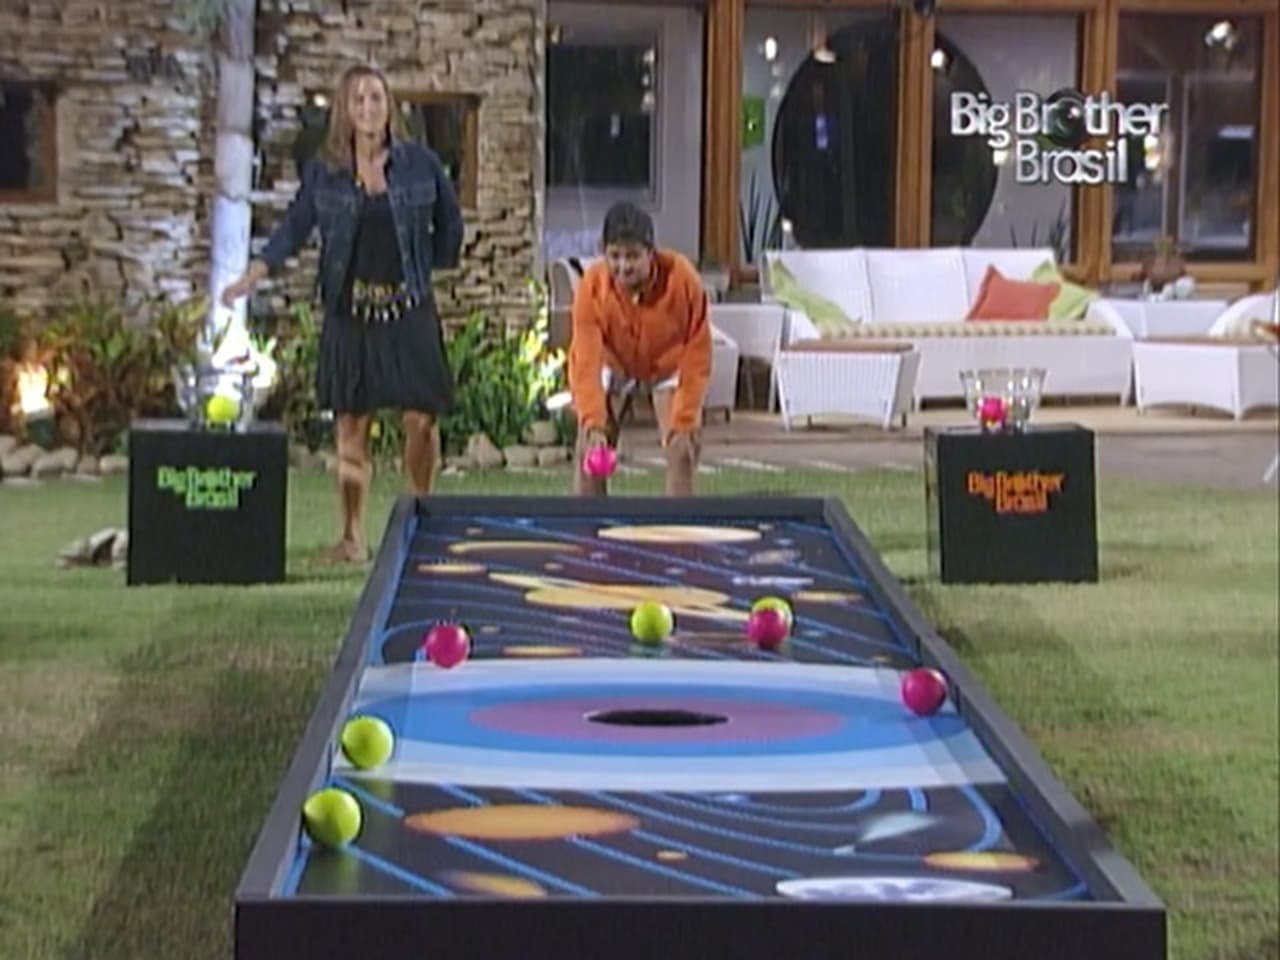 Big Brother Brasil - Season 4 Episode 81 : Episode 81